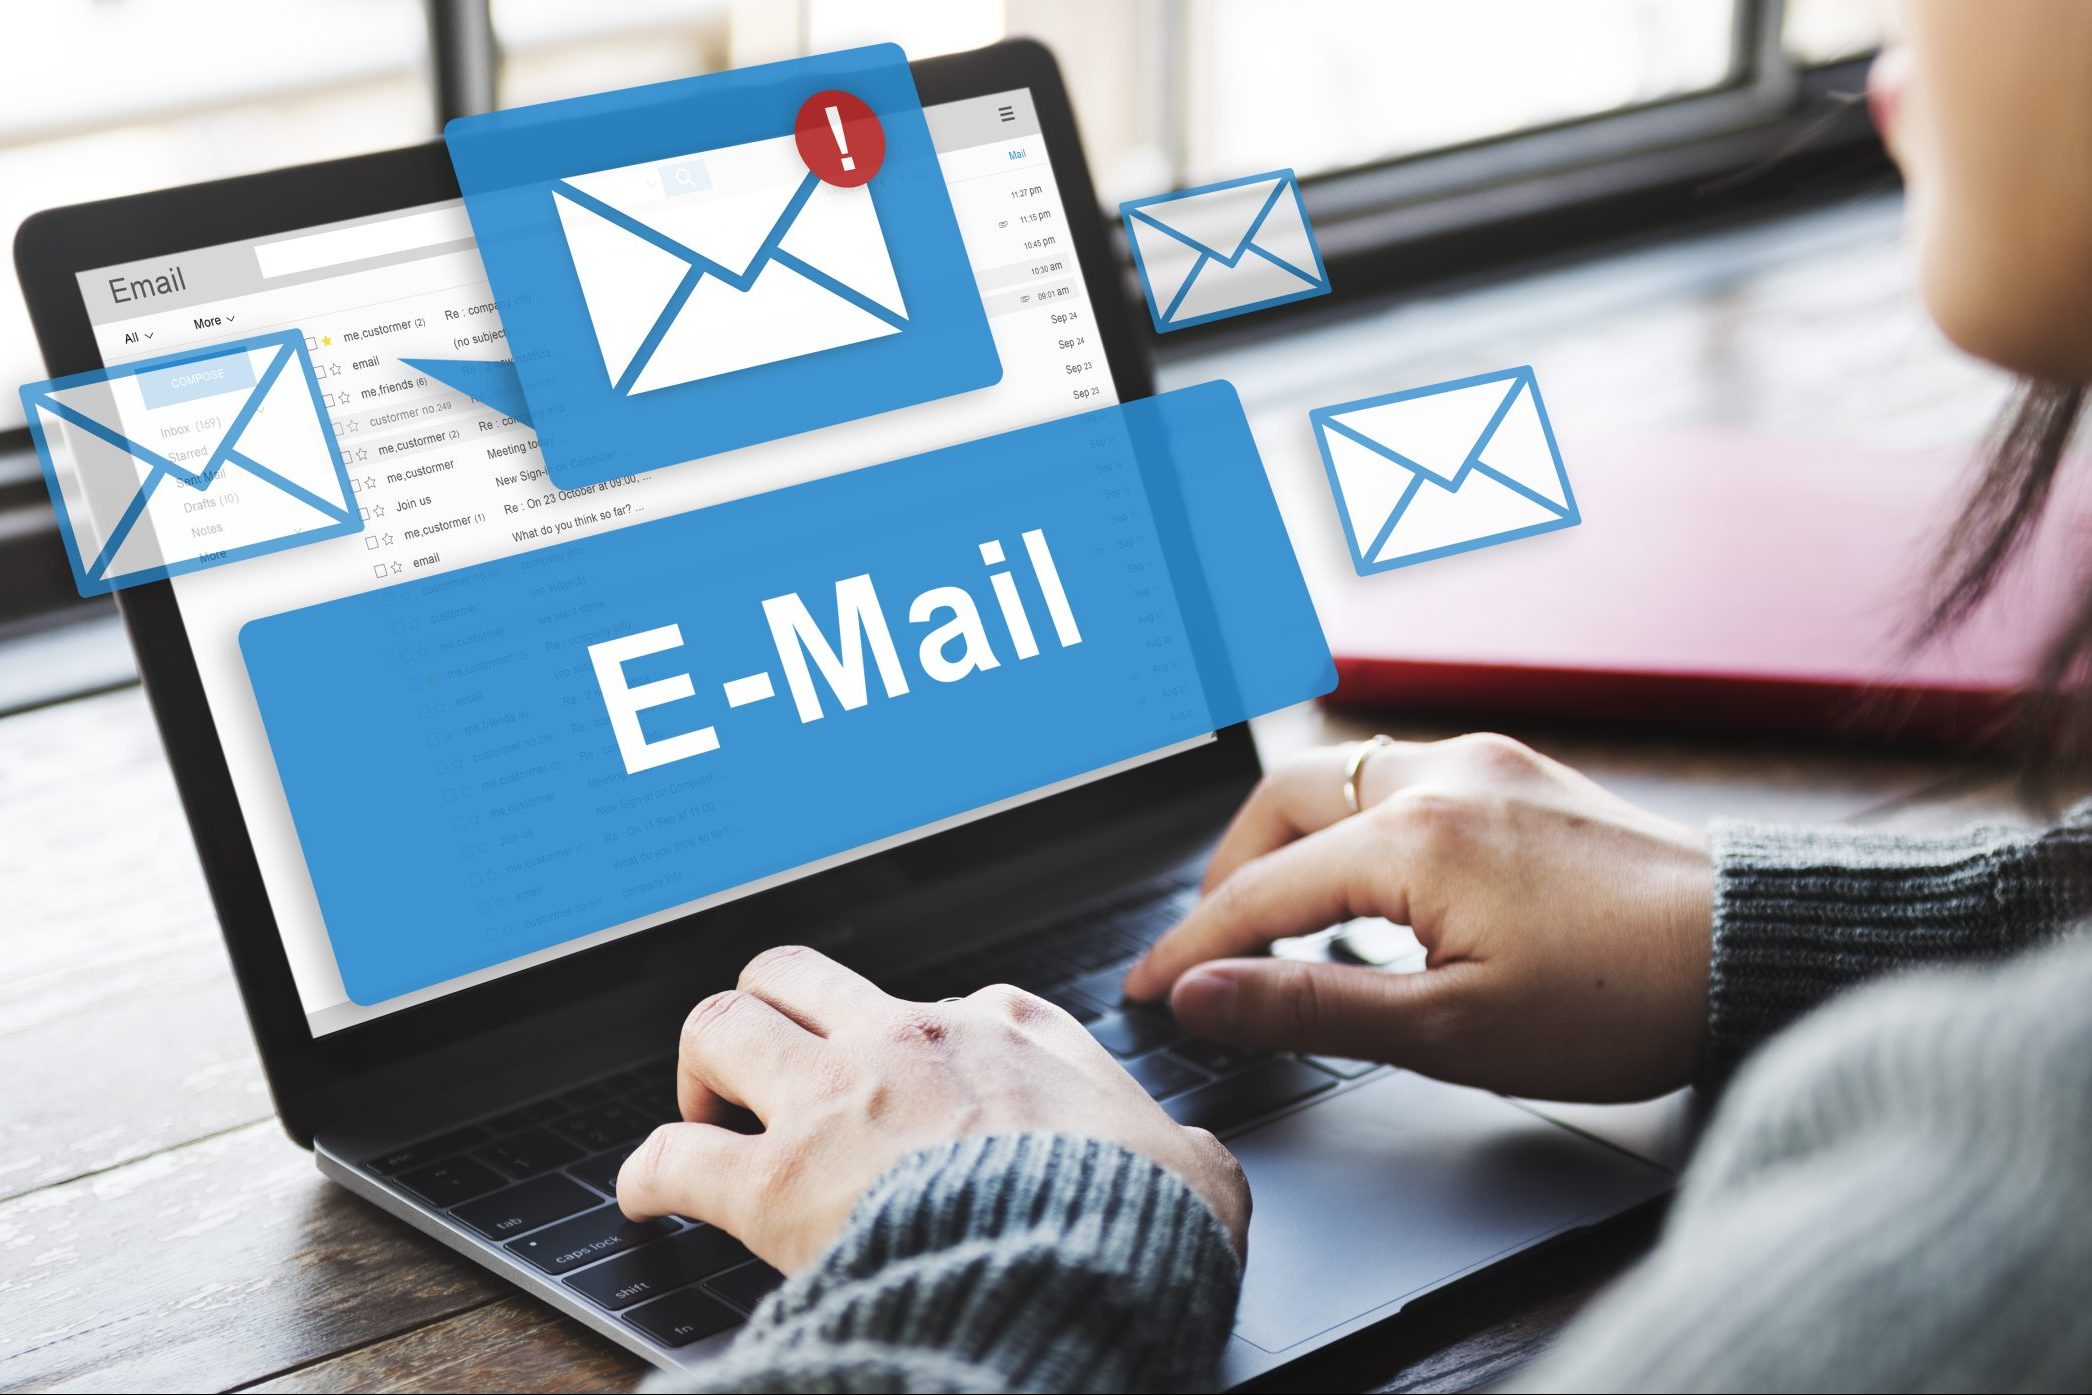 Worker receives multiple urgent emails